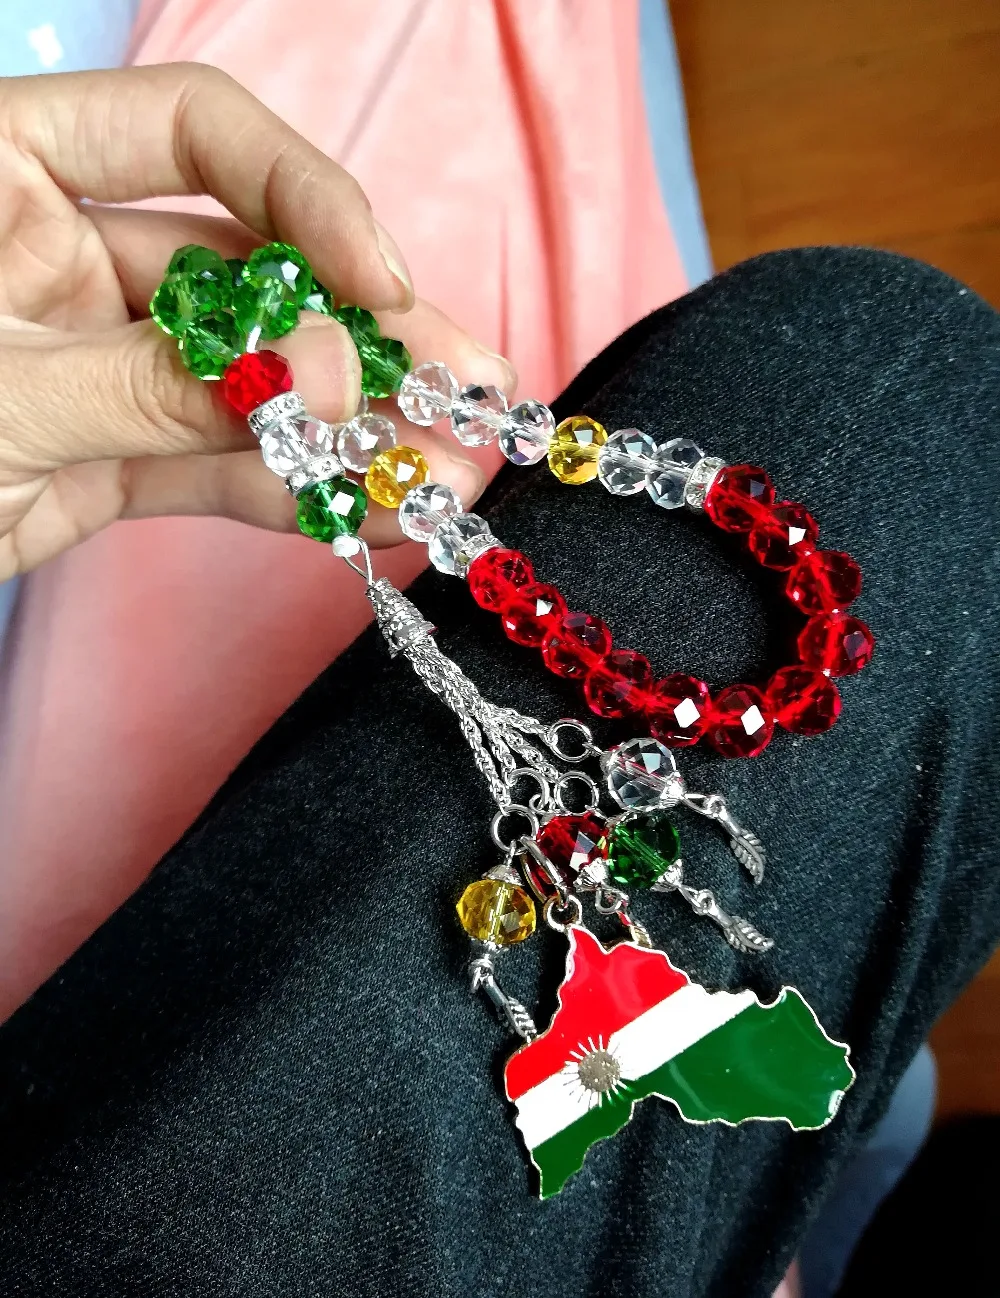 Курдский флаг ювелирные изделия ожерелье Молитвенные Четки из бусин tasbih автомобиль висящий Курдистан курде tesbih tespeeh kurdische нашивки баннер